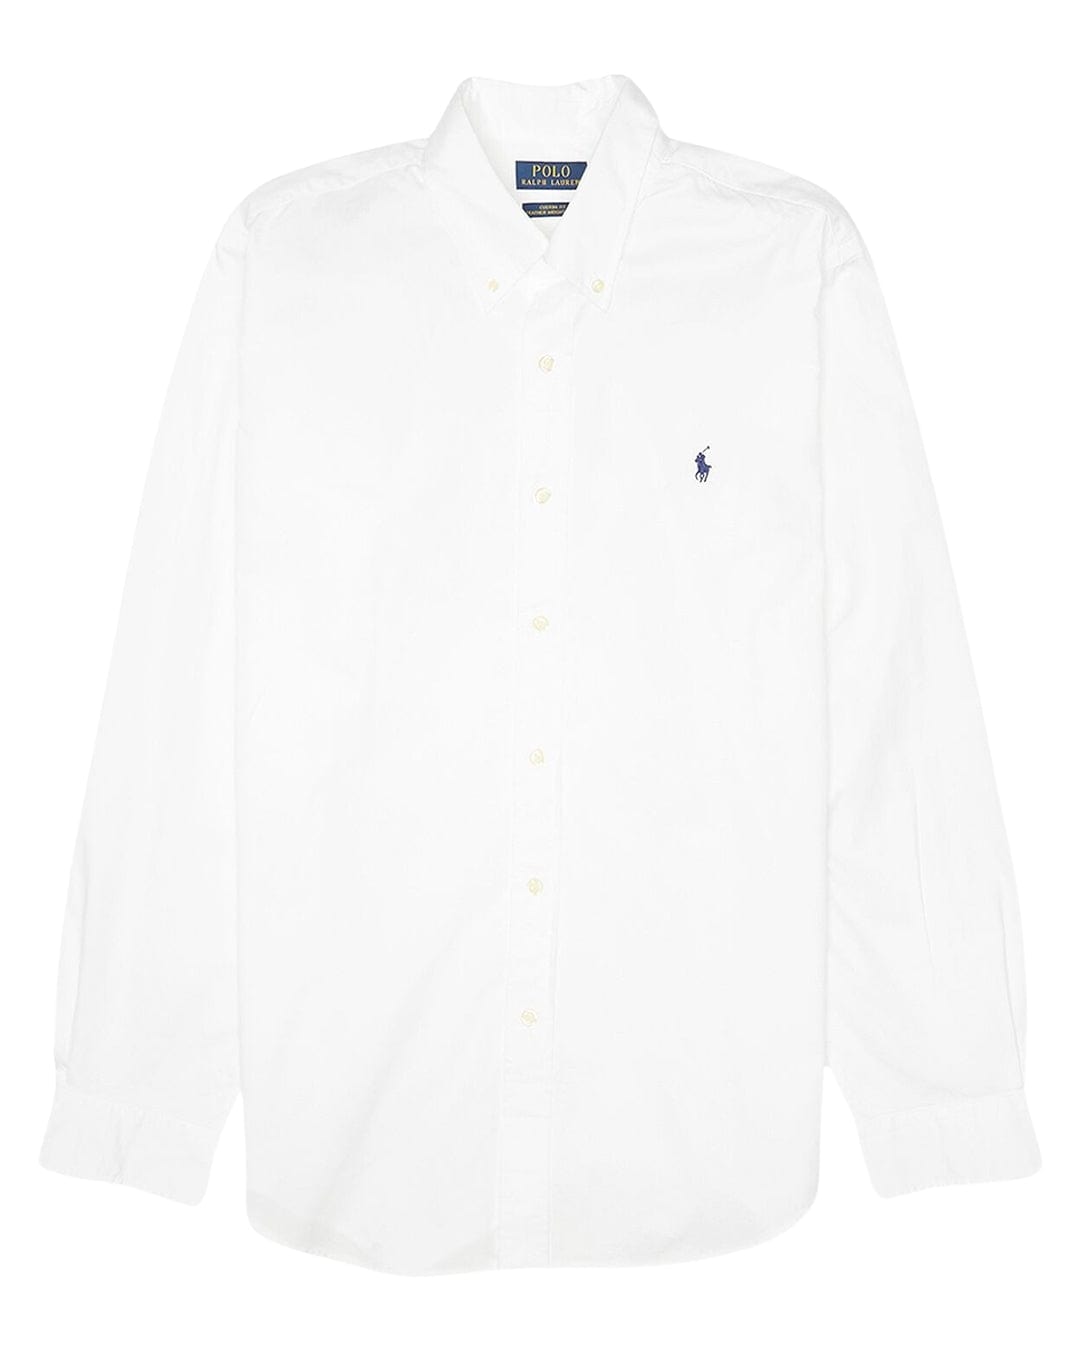 Polo Ralph Lauren Shirts Polo Ralph Lauren White Sport Long Sleeved Shirt